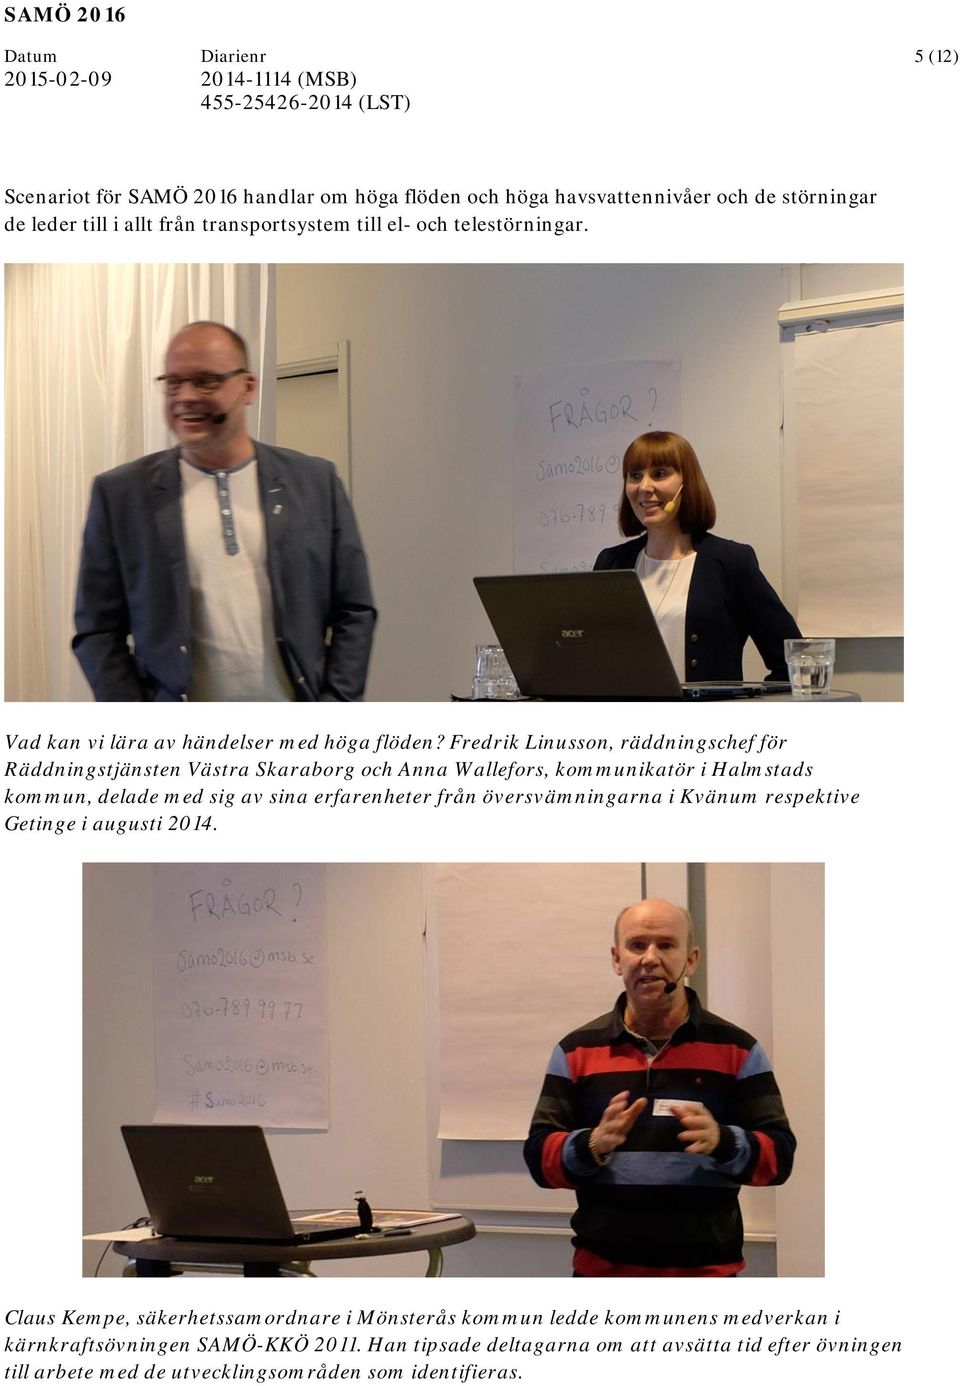 Fredrik Linusson, räddningschef för Räddningstjänsten Västra Skaraborg och Anna Wallefors, kommunikatör i Halmstads kommun, delade med sig av sina erfarenheter från